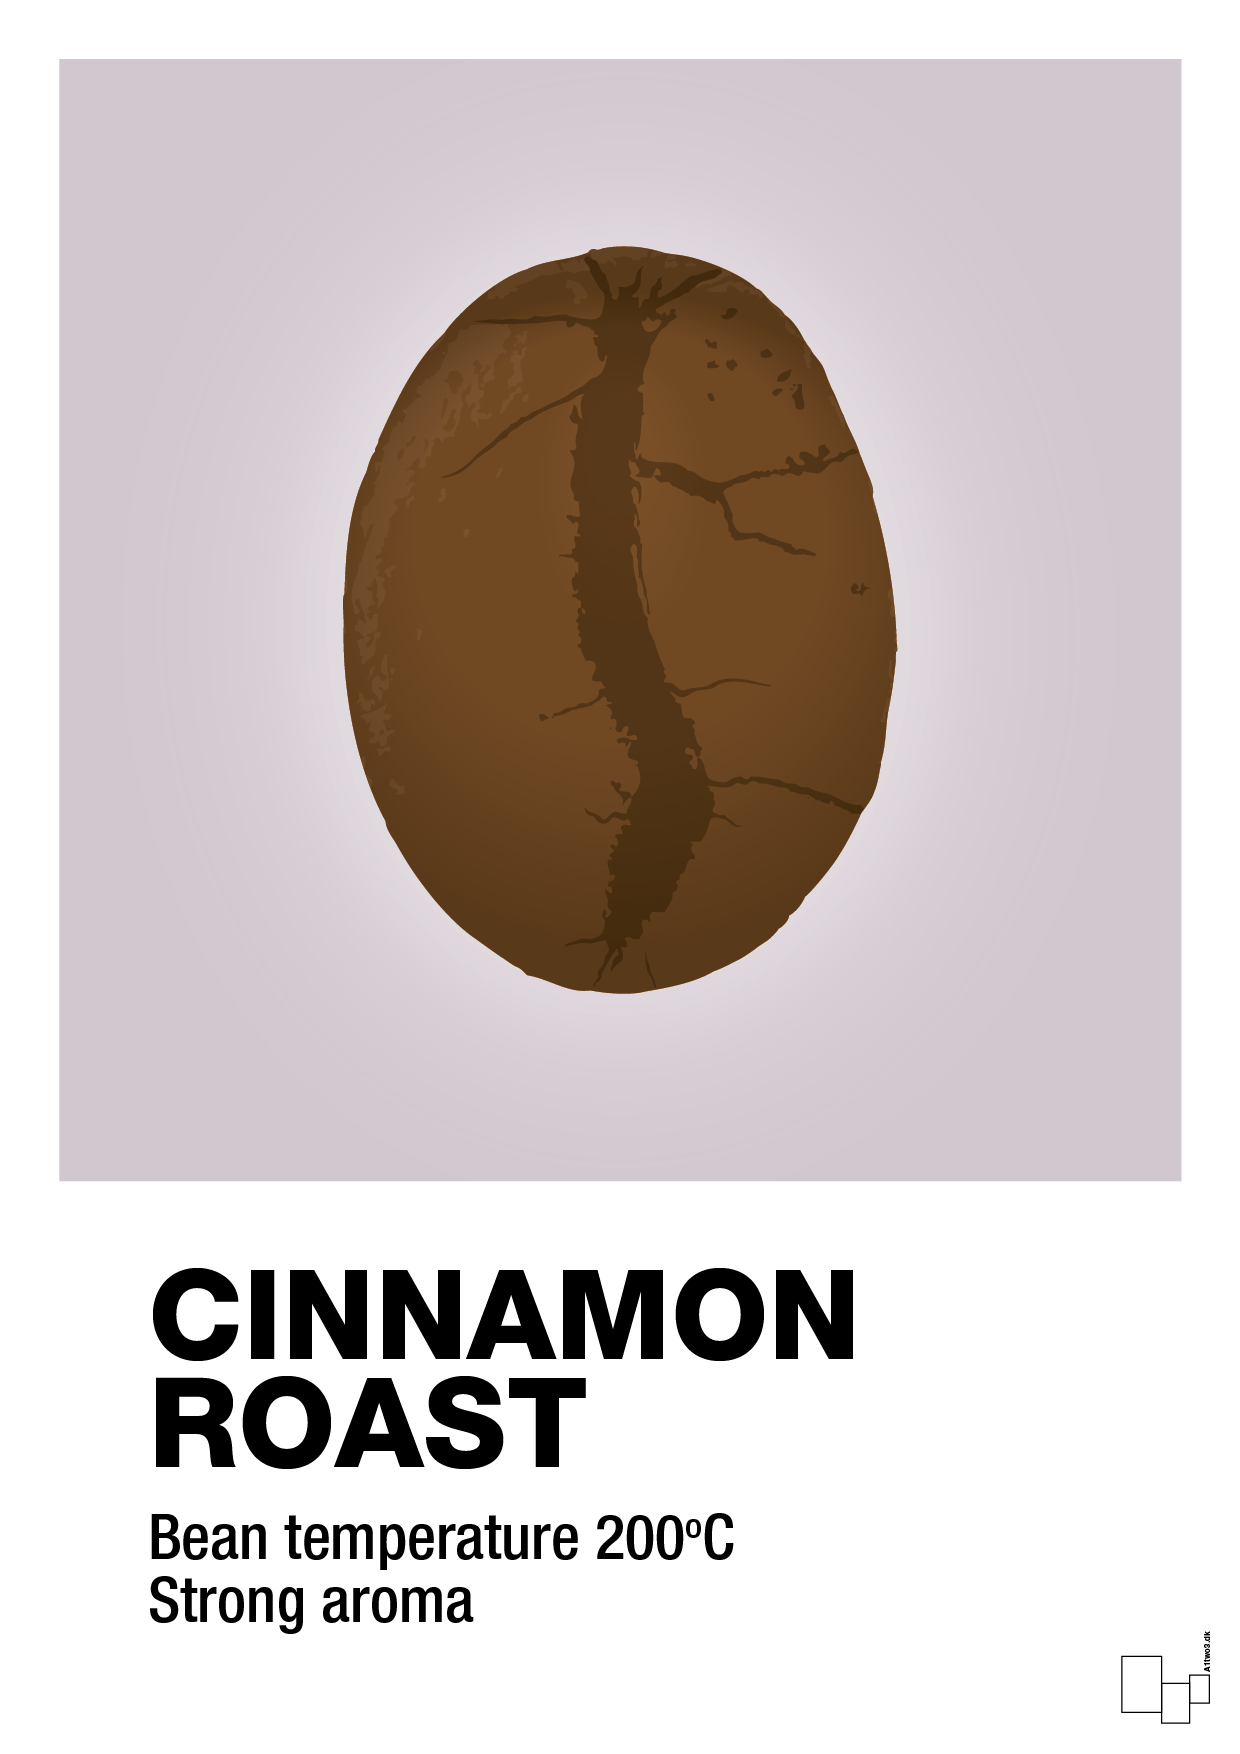 cinnamom roast - Plakat med Mad & Drikke i Dusty Lilac